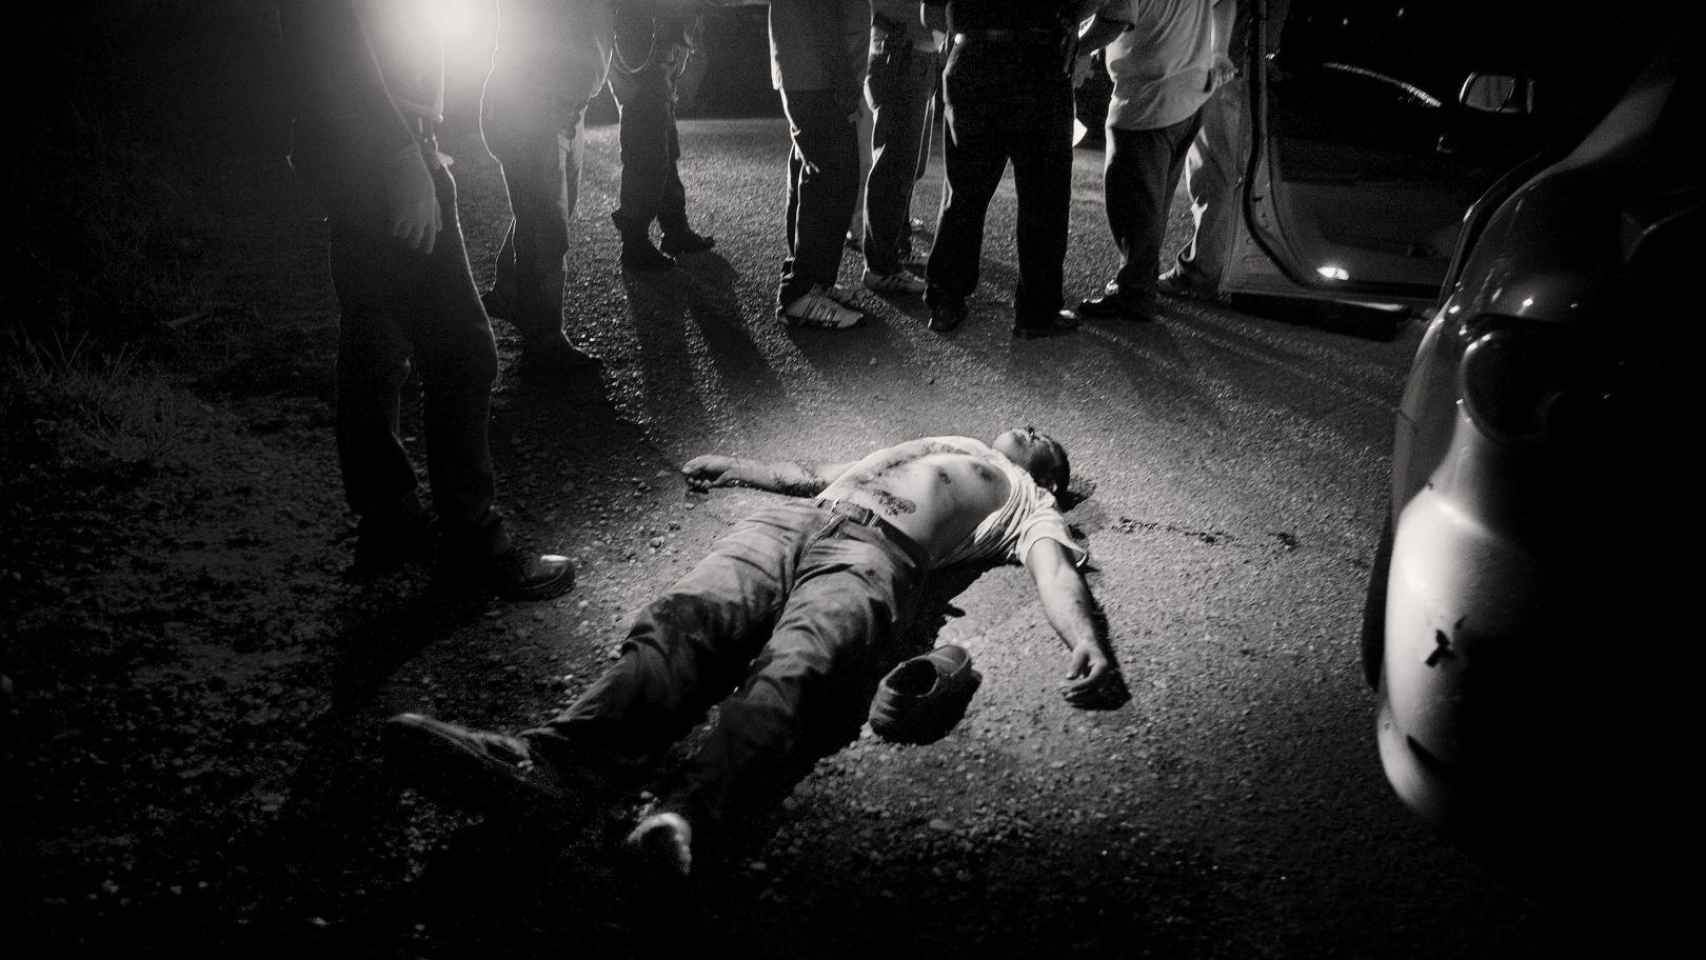 Varias personas observan un cadáver que yace descamisado en el suelo. Foto: Javier Arcenillas / Word Press Photo